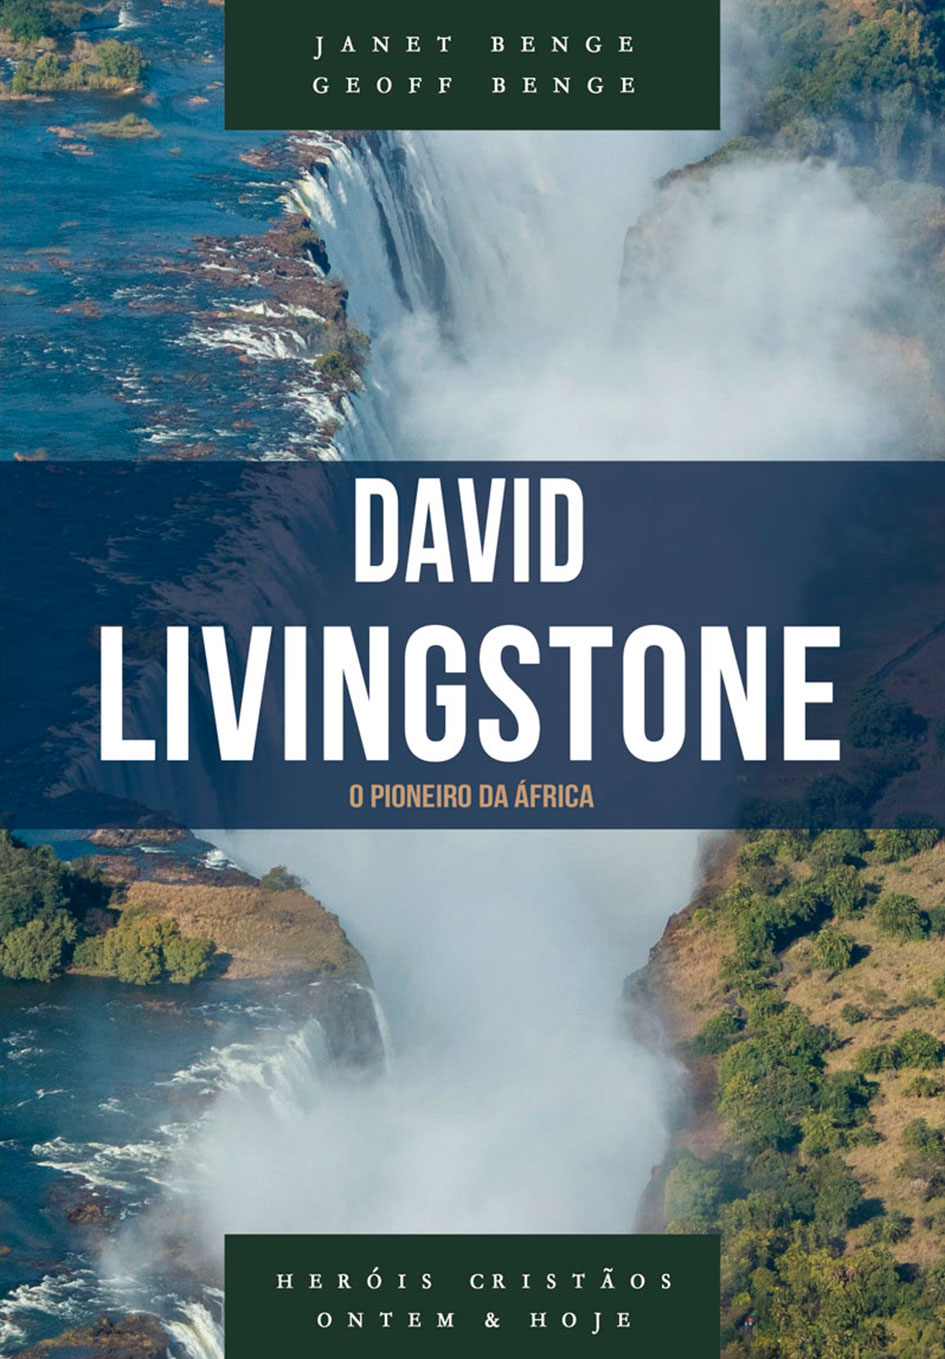 David Livingstone - Série heróis cristãos ontem & hoje